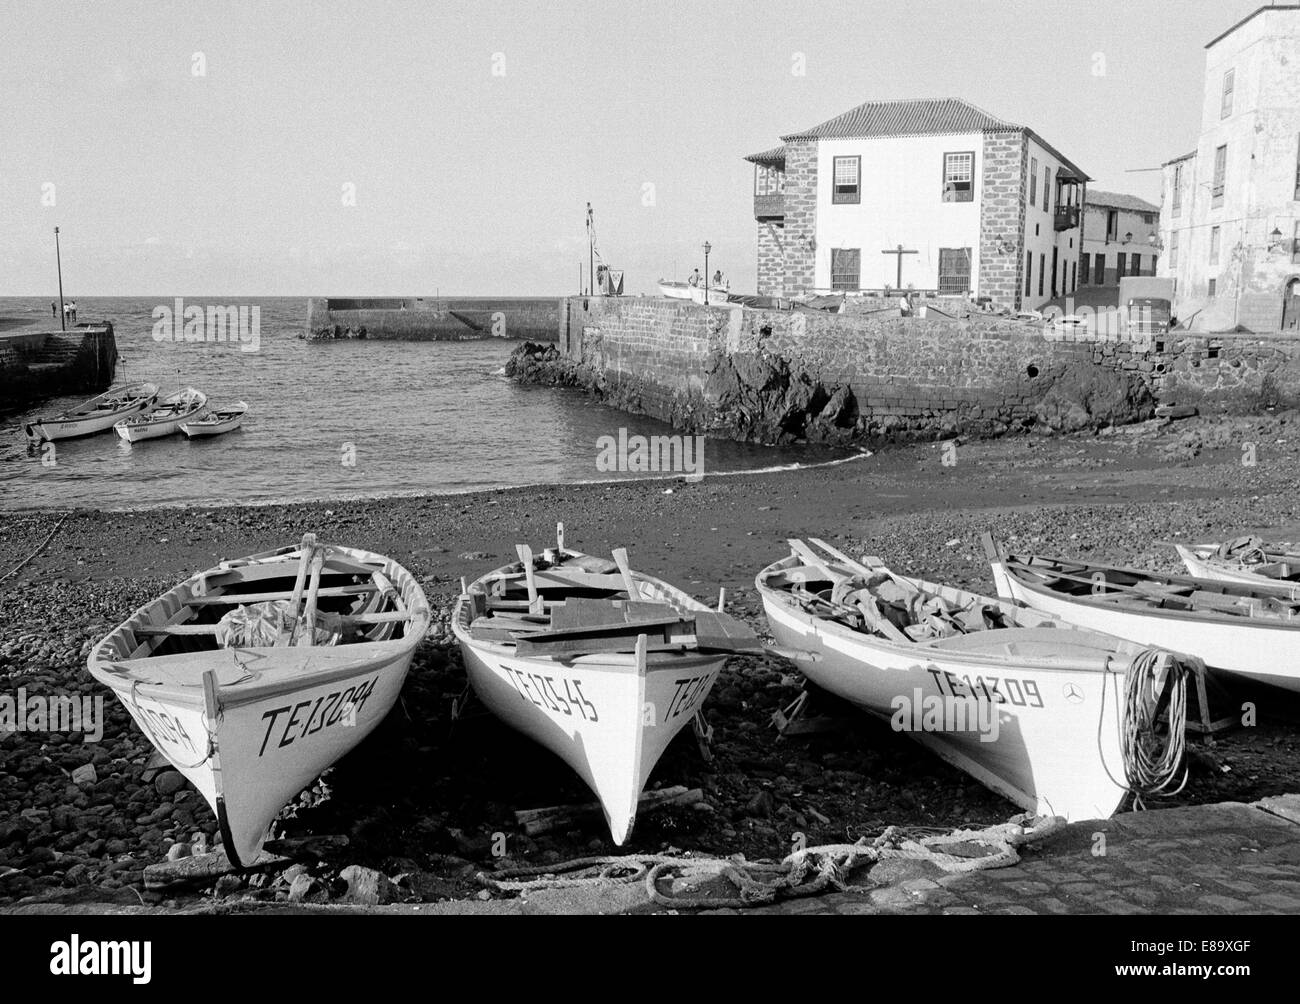 Achtziger Jahre, Fischerboote im Fischereihafen von Puerto de la Cruz, Teneriffa, Kanarische Inseln, Spanien Banque D'Images